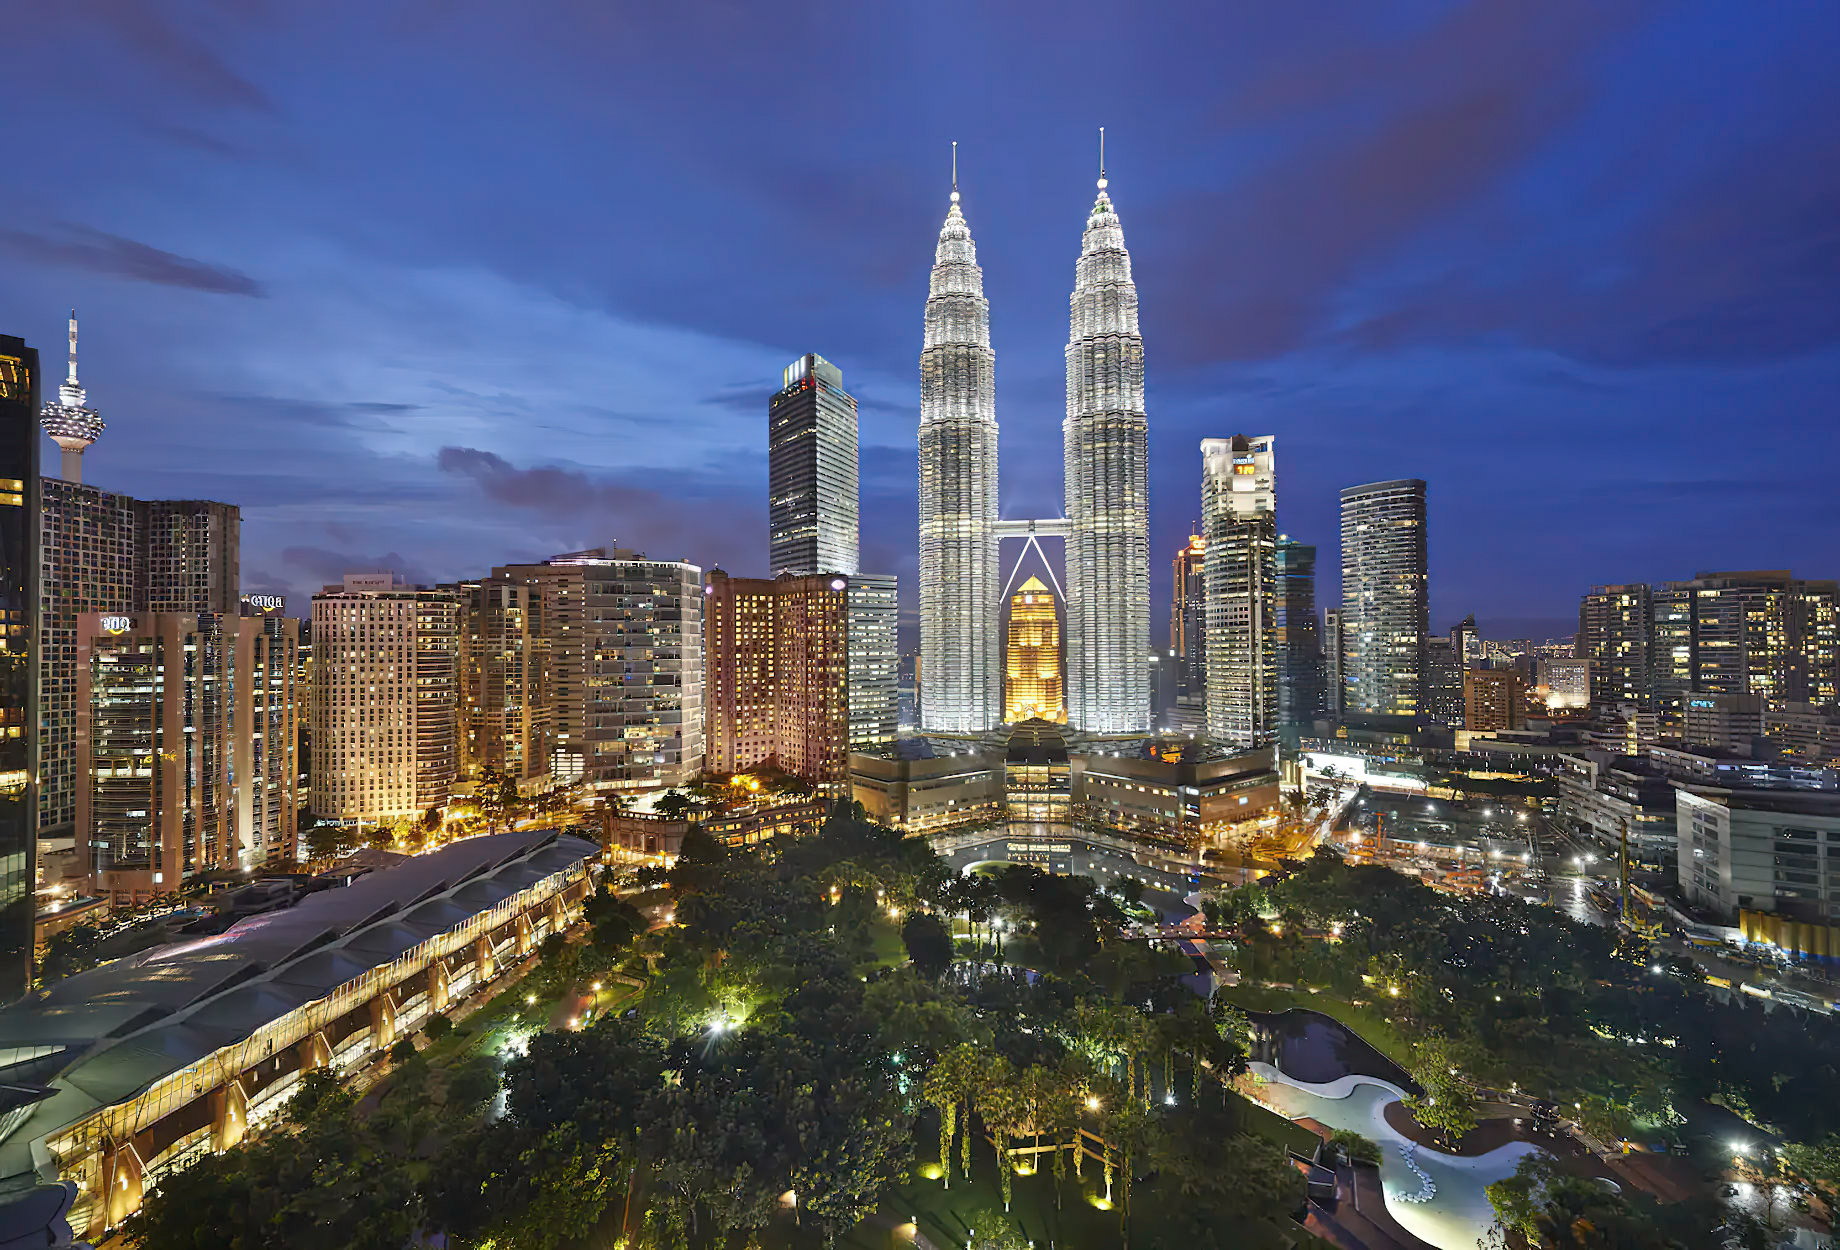 Mandarin Oriental, Kuala Lumpur Hotel – Kuala Lumpur, Indonesia – Twin Tower Aerial View Night